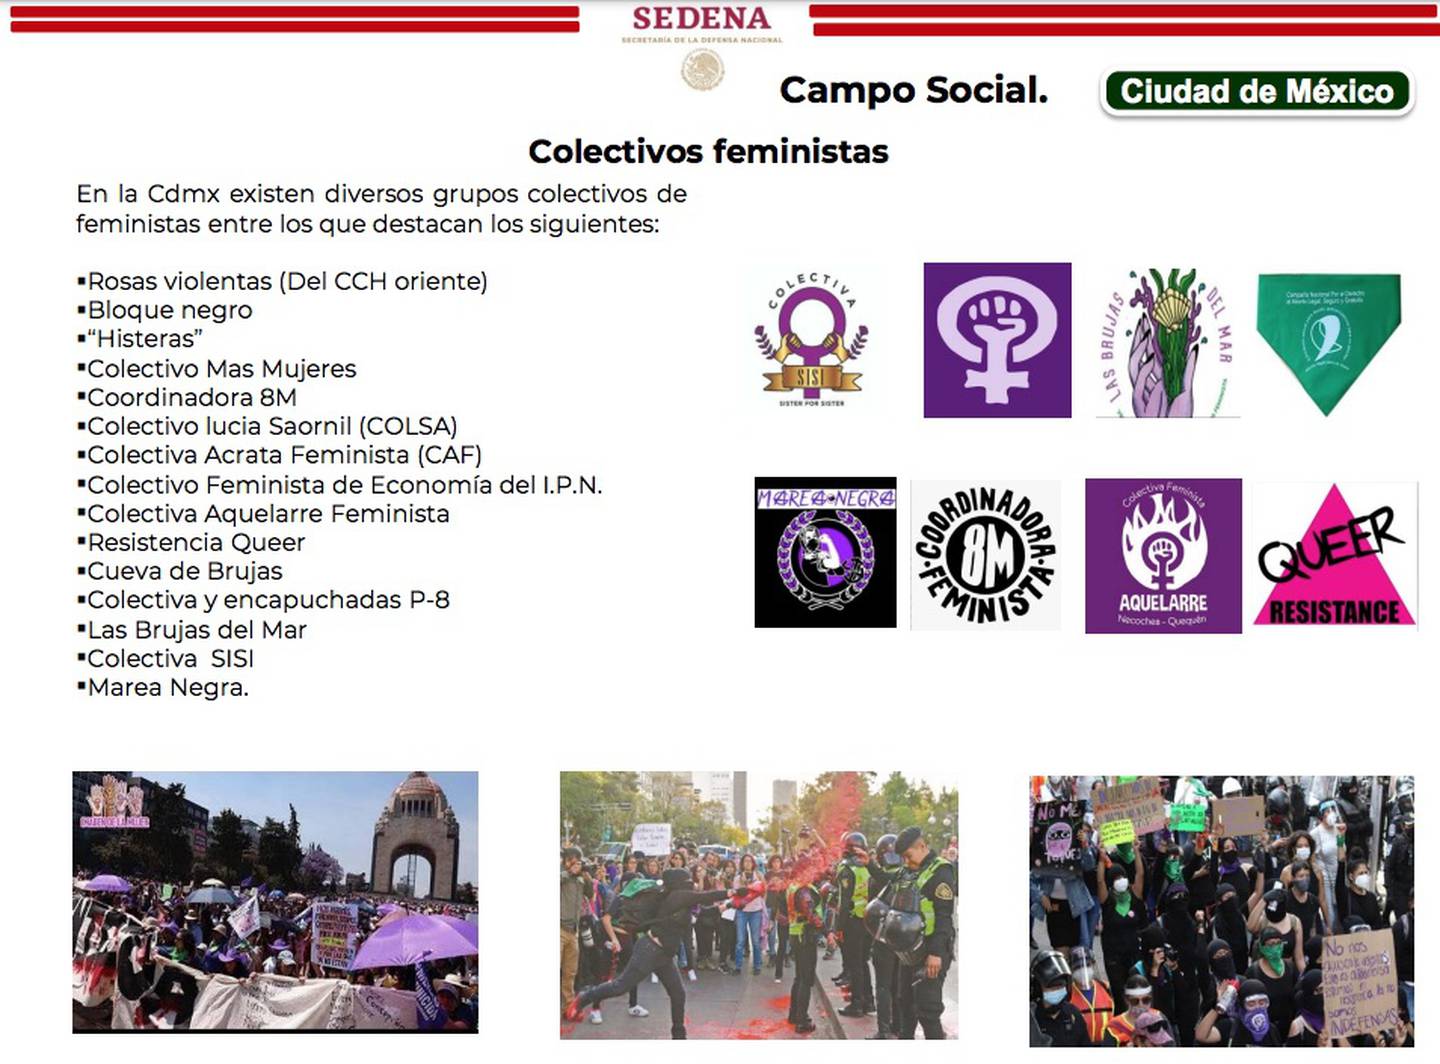 Grupos feministas identificados en la CDMX por la Sedena.